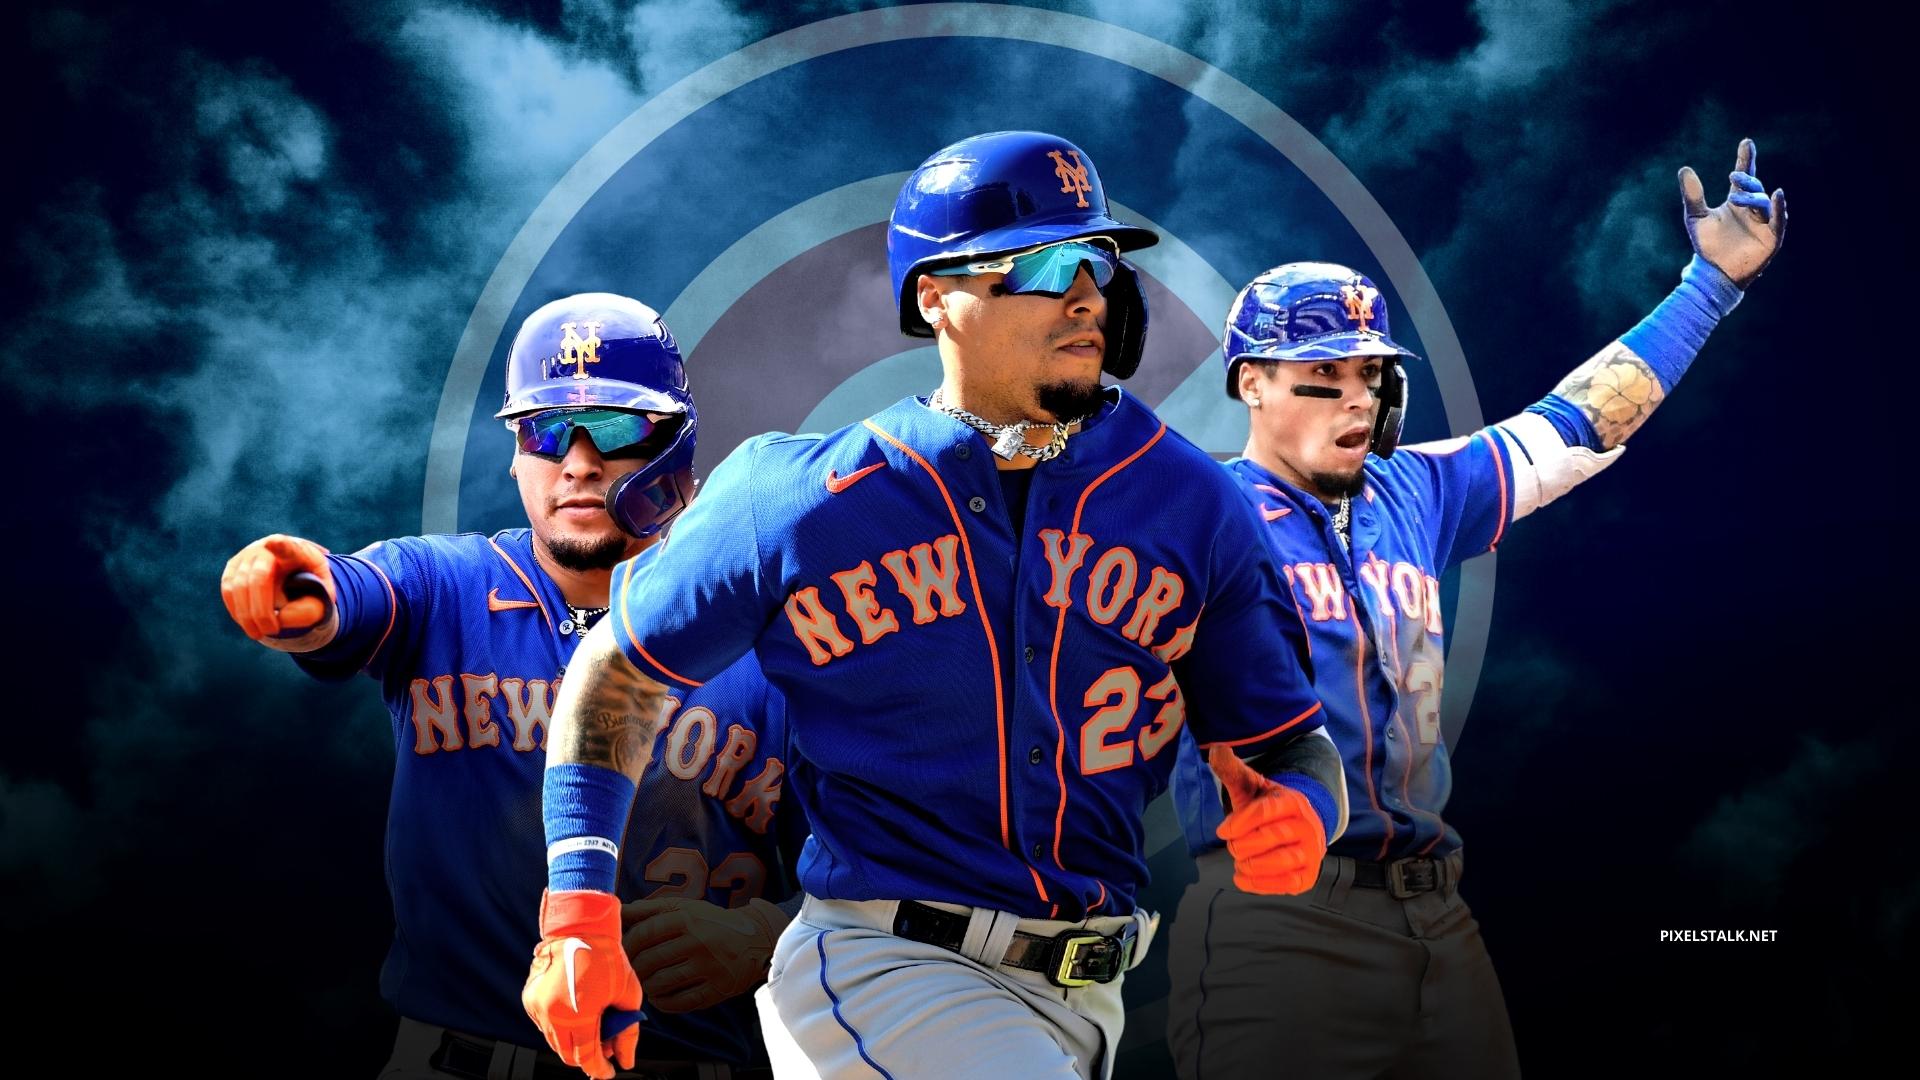 Wallpaper wallpaper sport logo baseball glitter checkered MLB New  York Mets images for desktop section спорт  download